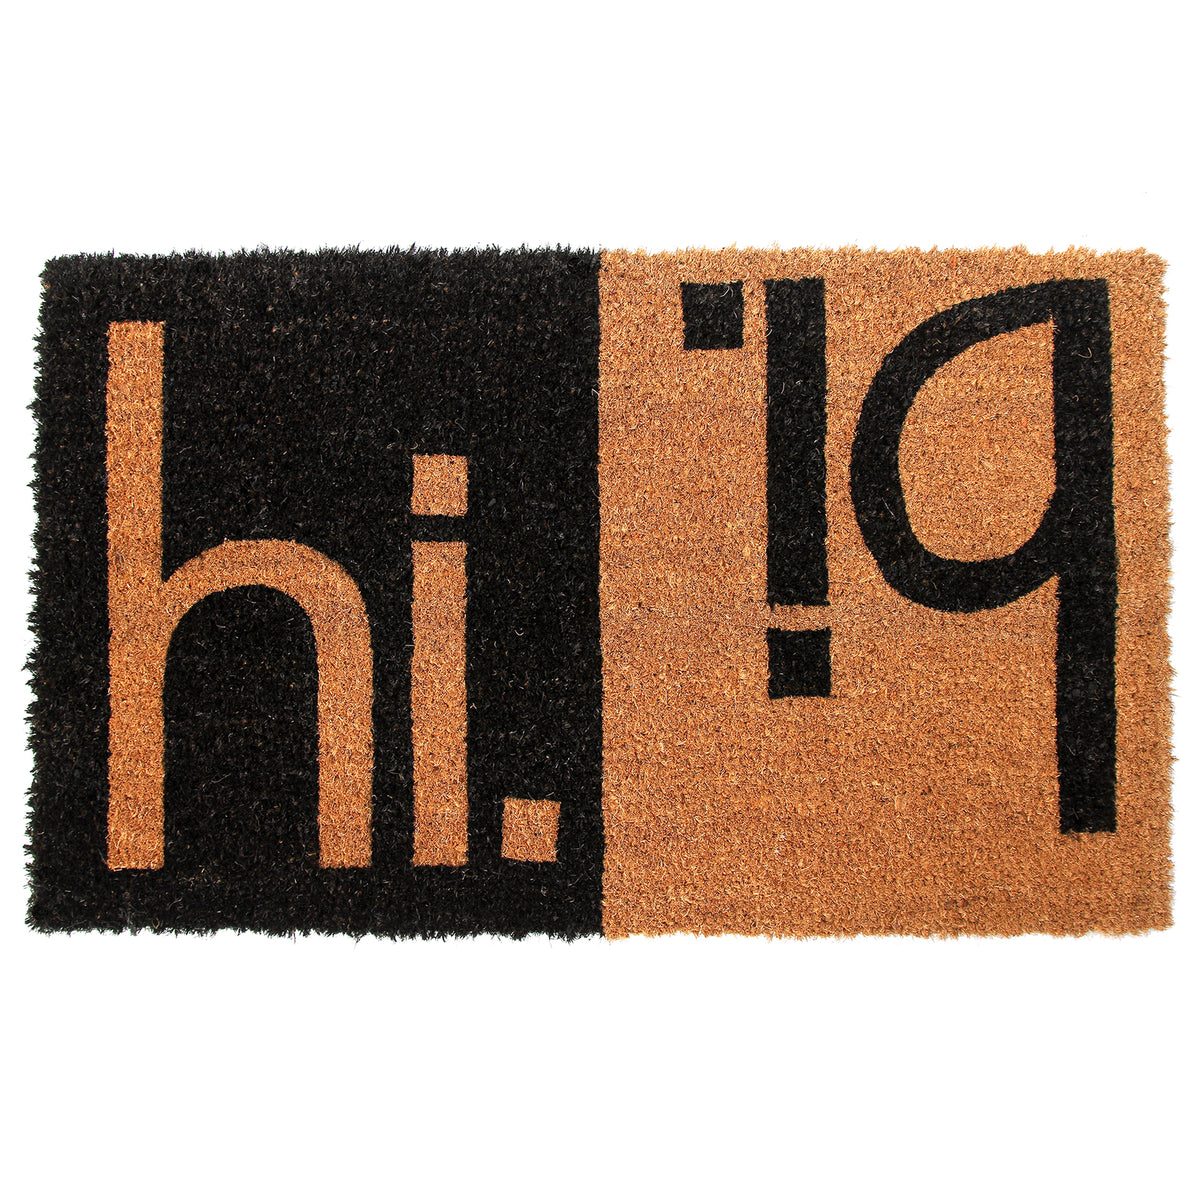 Elegant Funny Black & Brown "Hi Bi" Printed Natural Coir Door Mat - OnlyMat